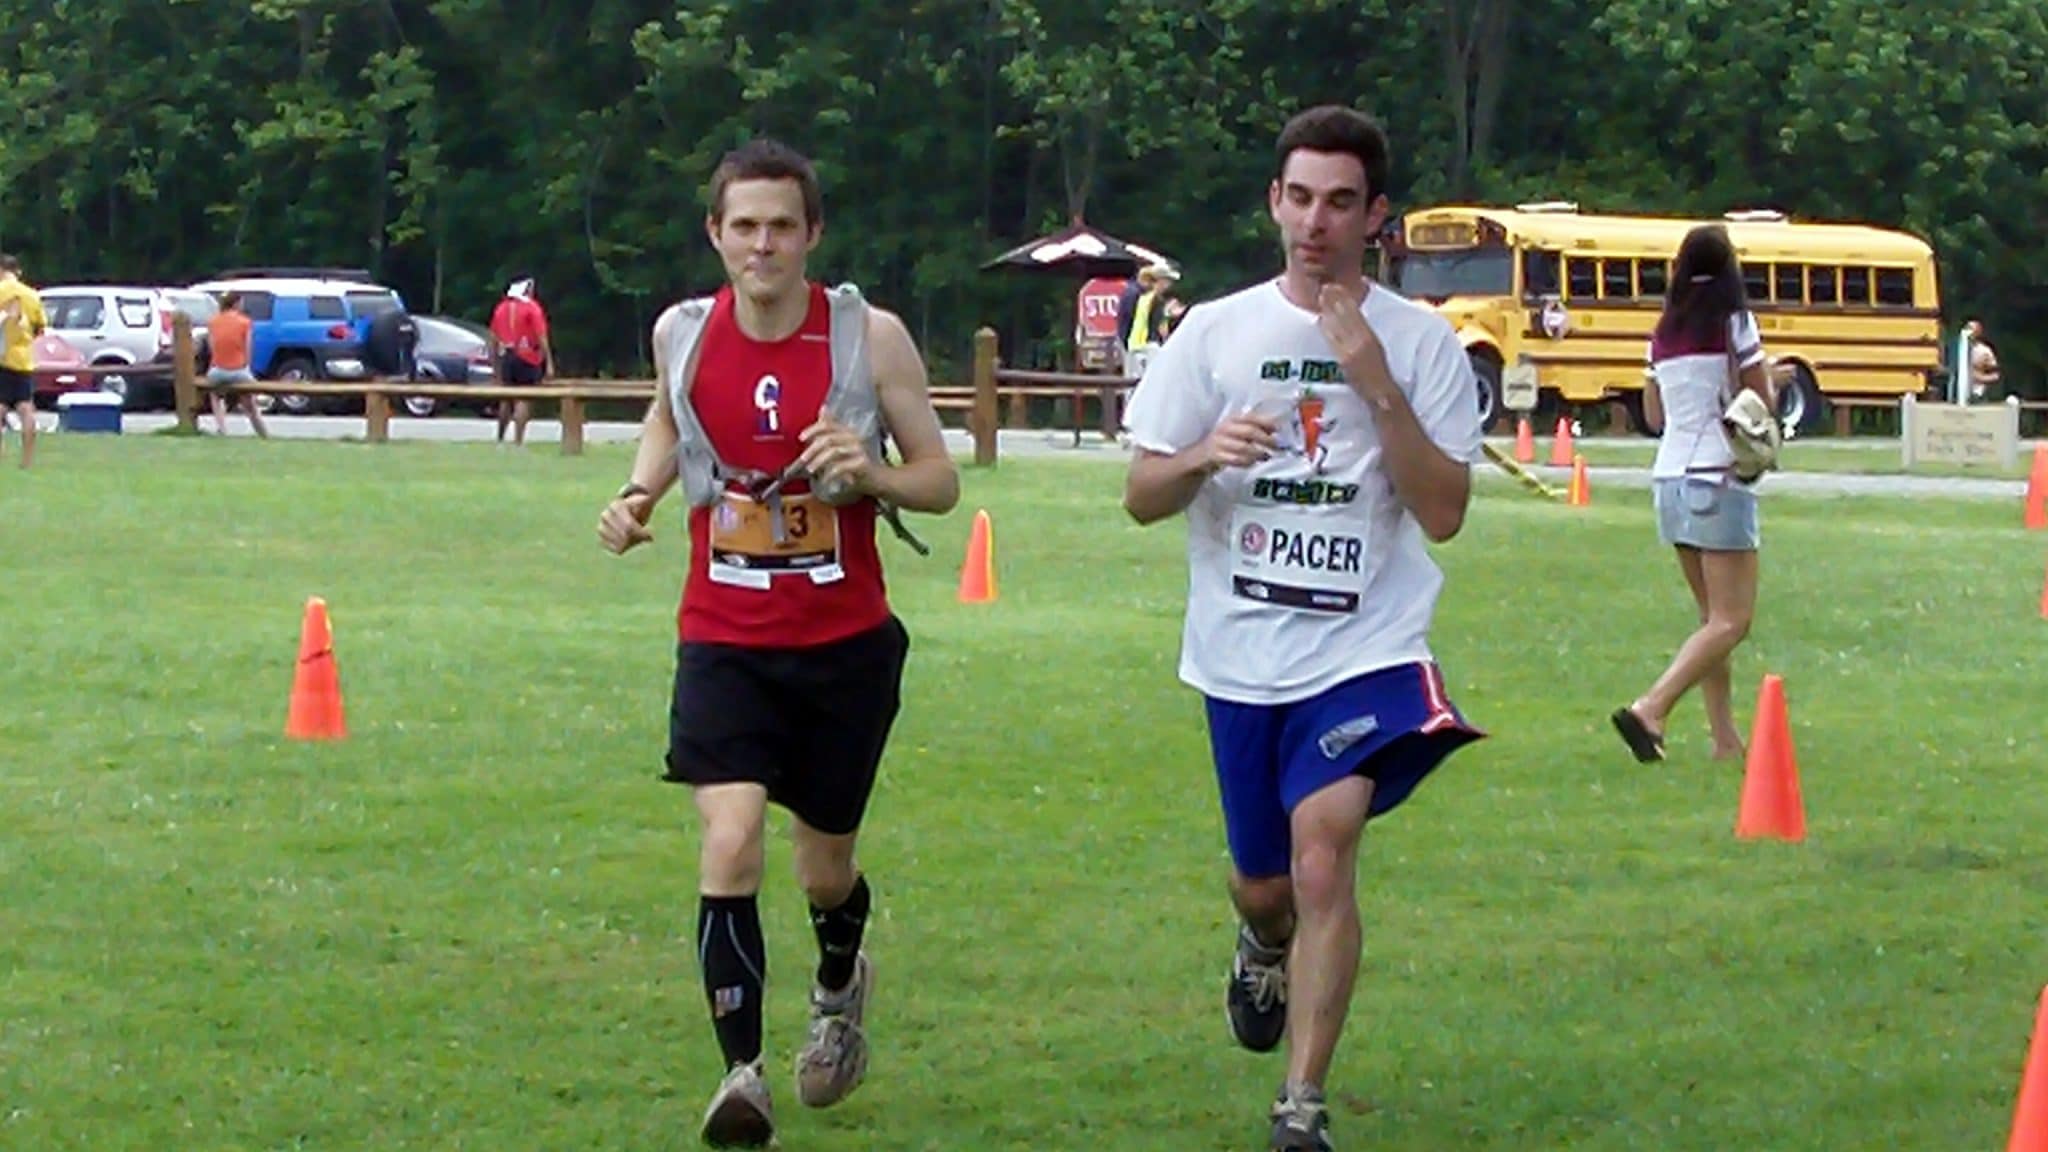 Matt and pacer running across field